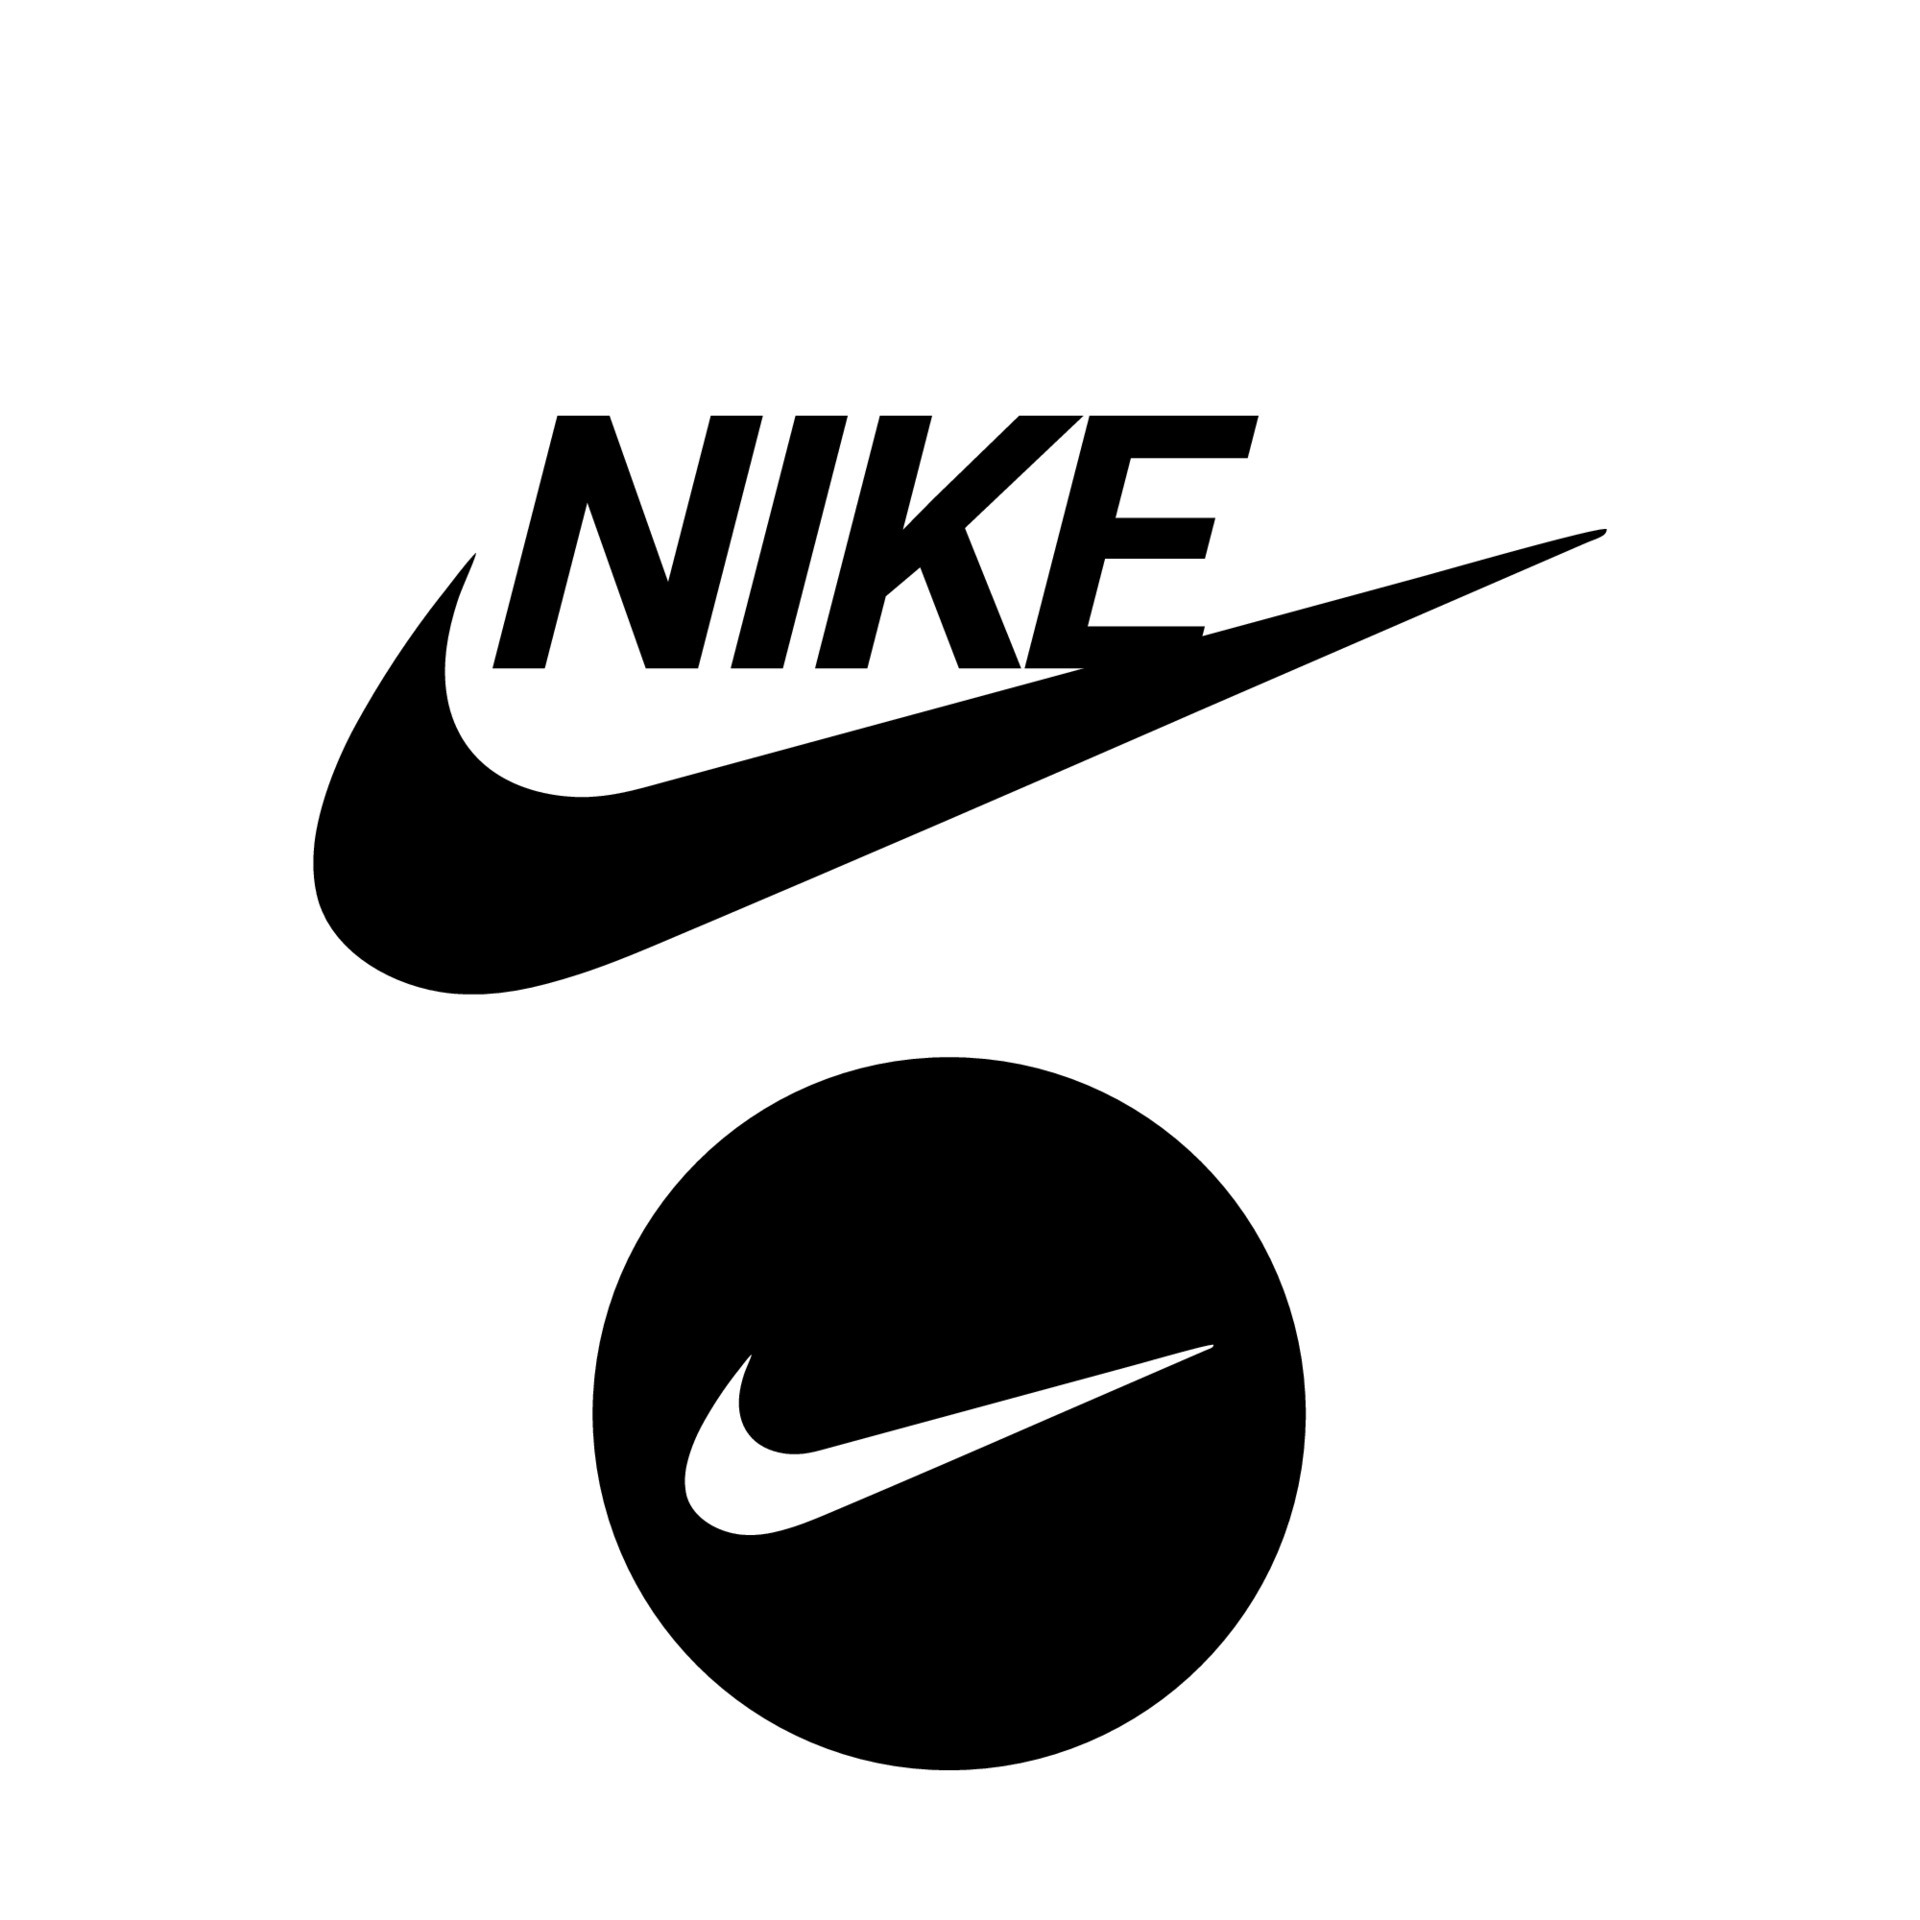 Đôi giày Nike trên nền trắng tinh khiết sẽ khiến bạn liên tưởng đến sự tinh tế và hiện đại của thiết kế. Bạn sẽ không muốn bỏ lỡ bức ảnh này để khám phá thêm về sức hút mạnh mẽ của thương hiệu Nike.